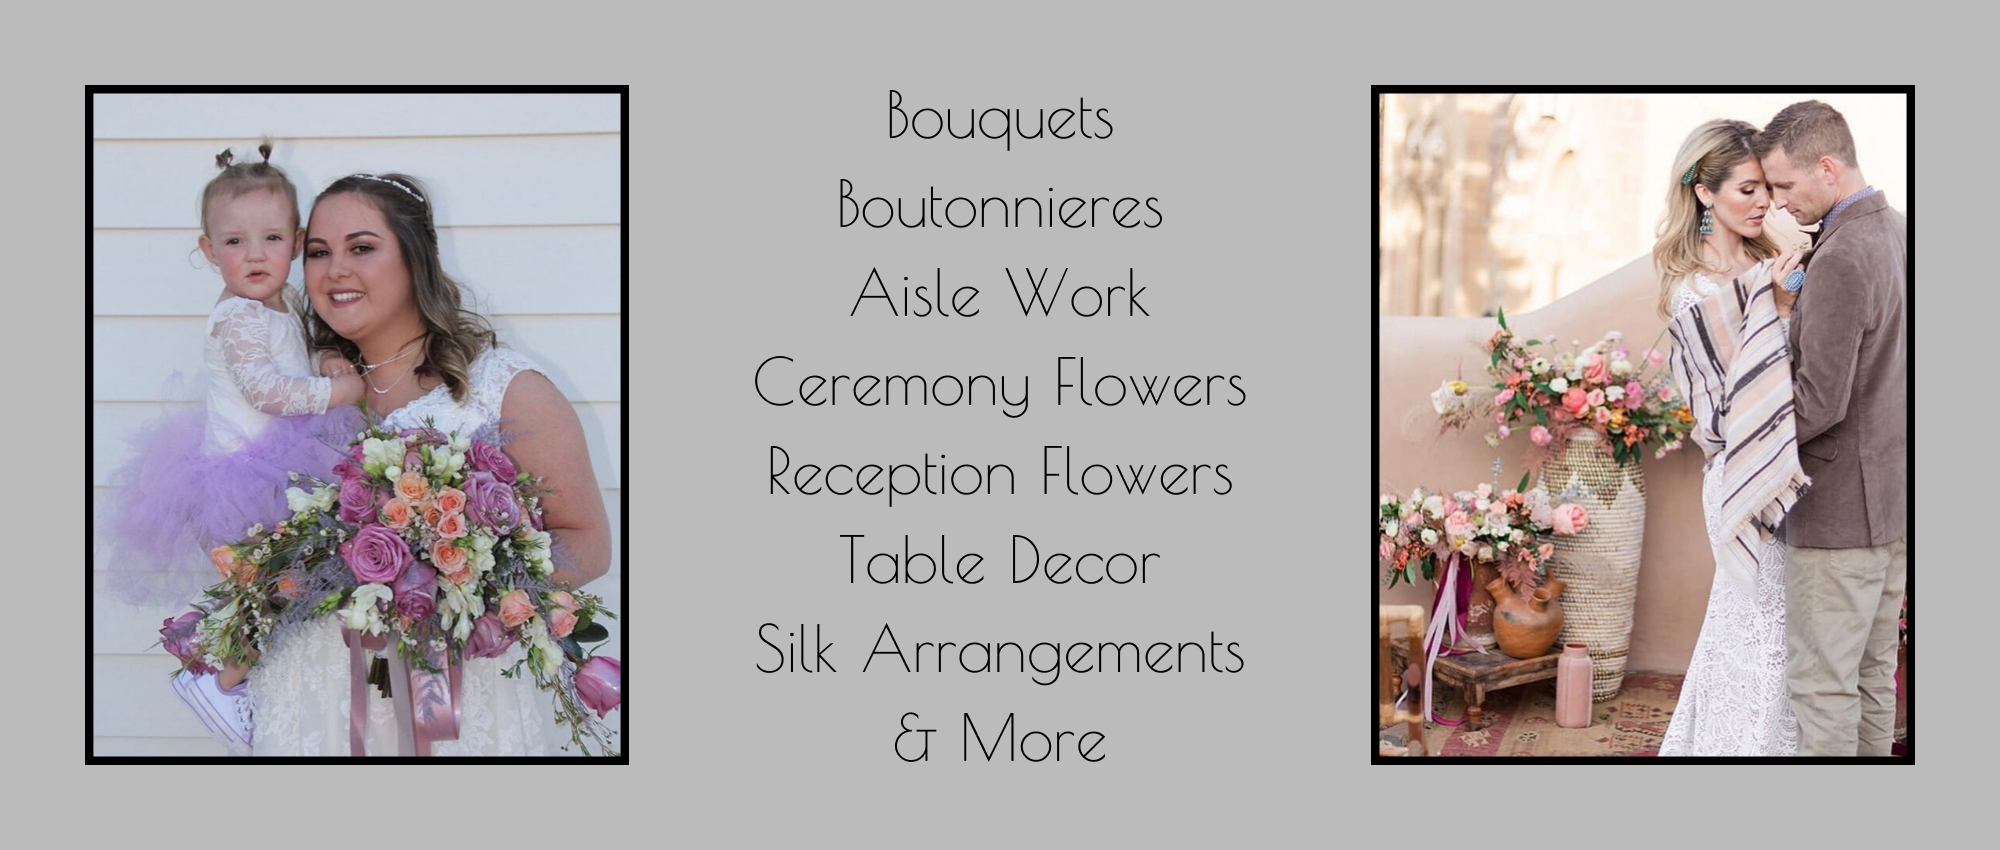 wedding flower services